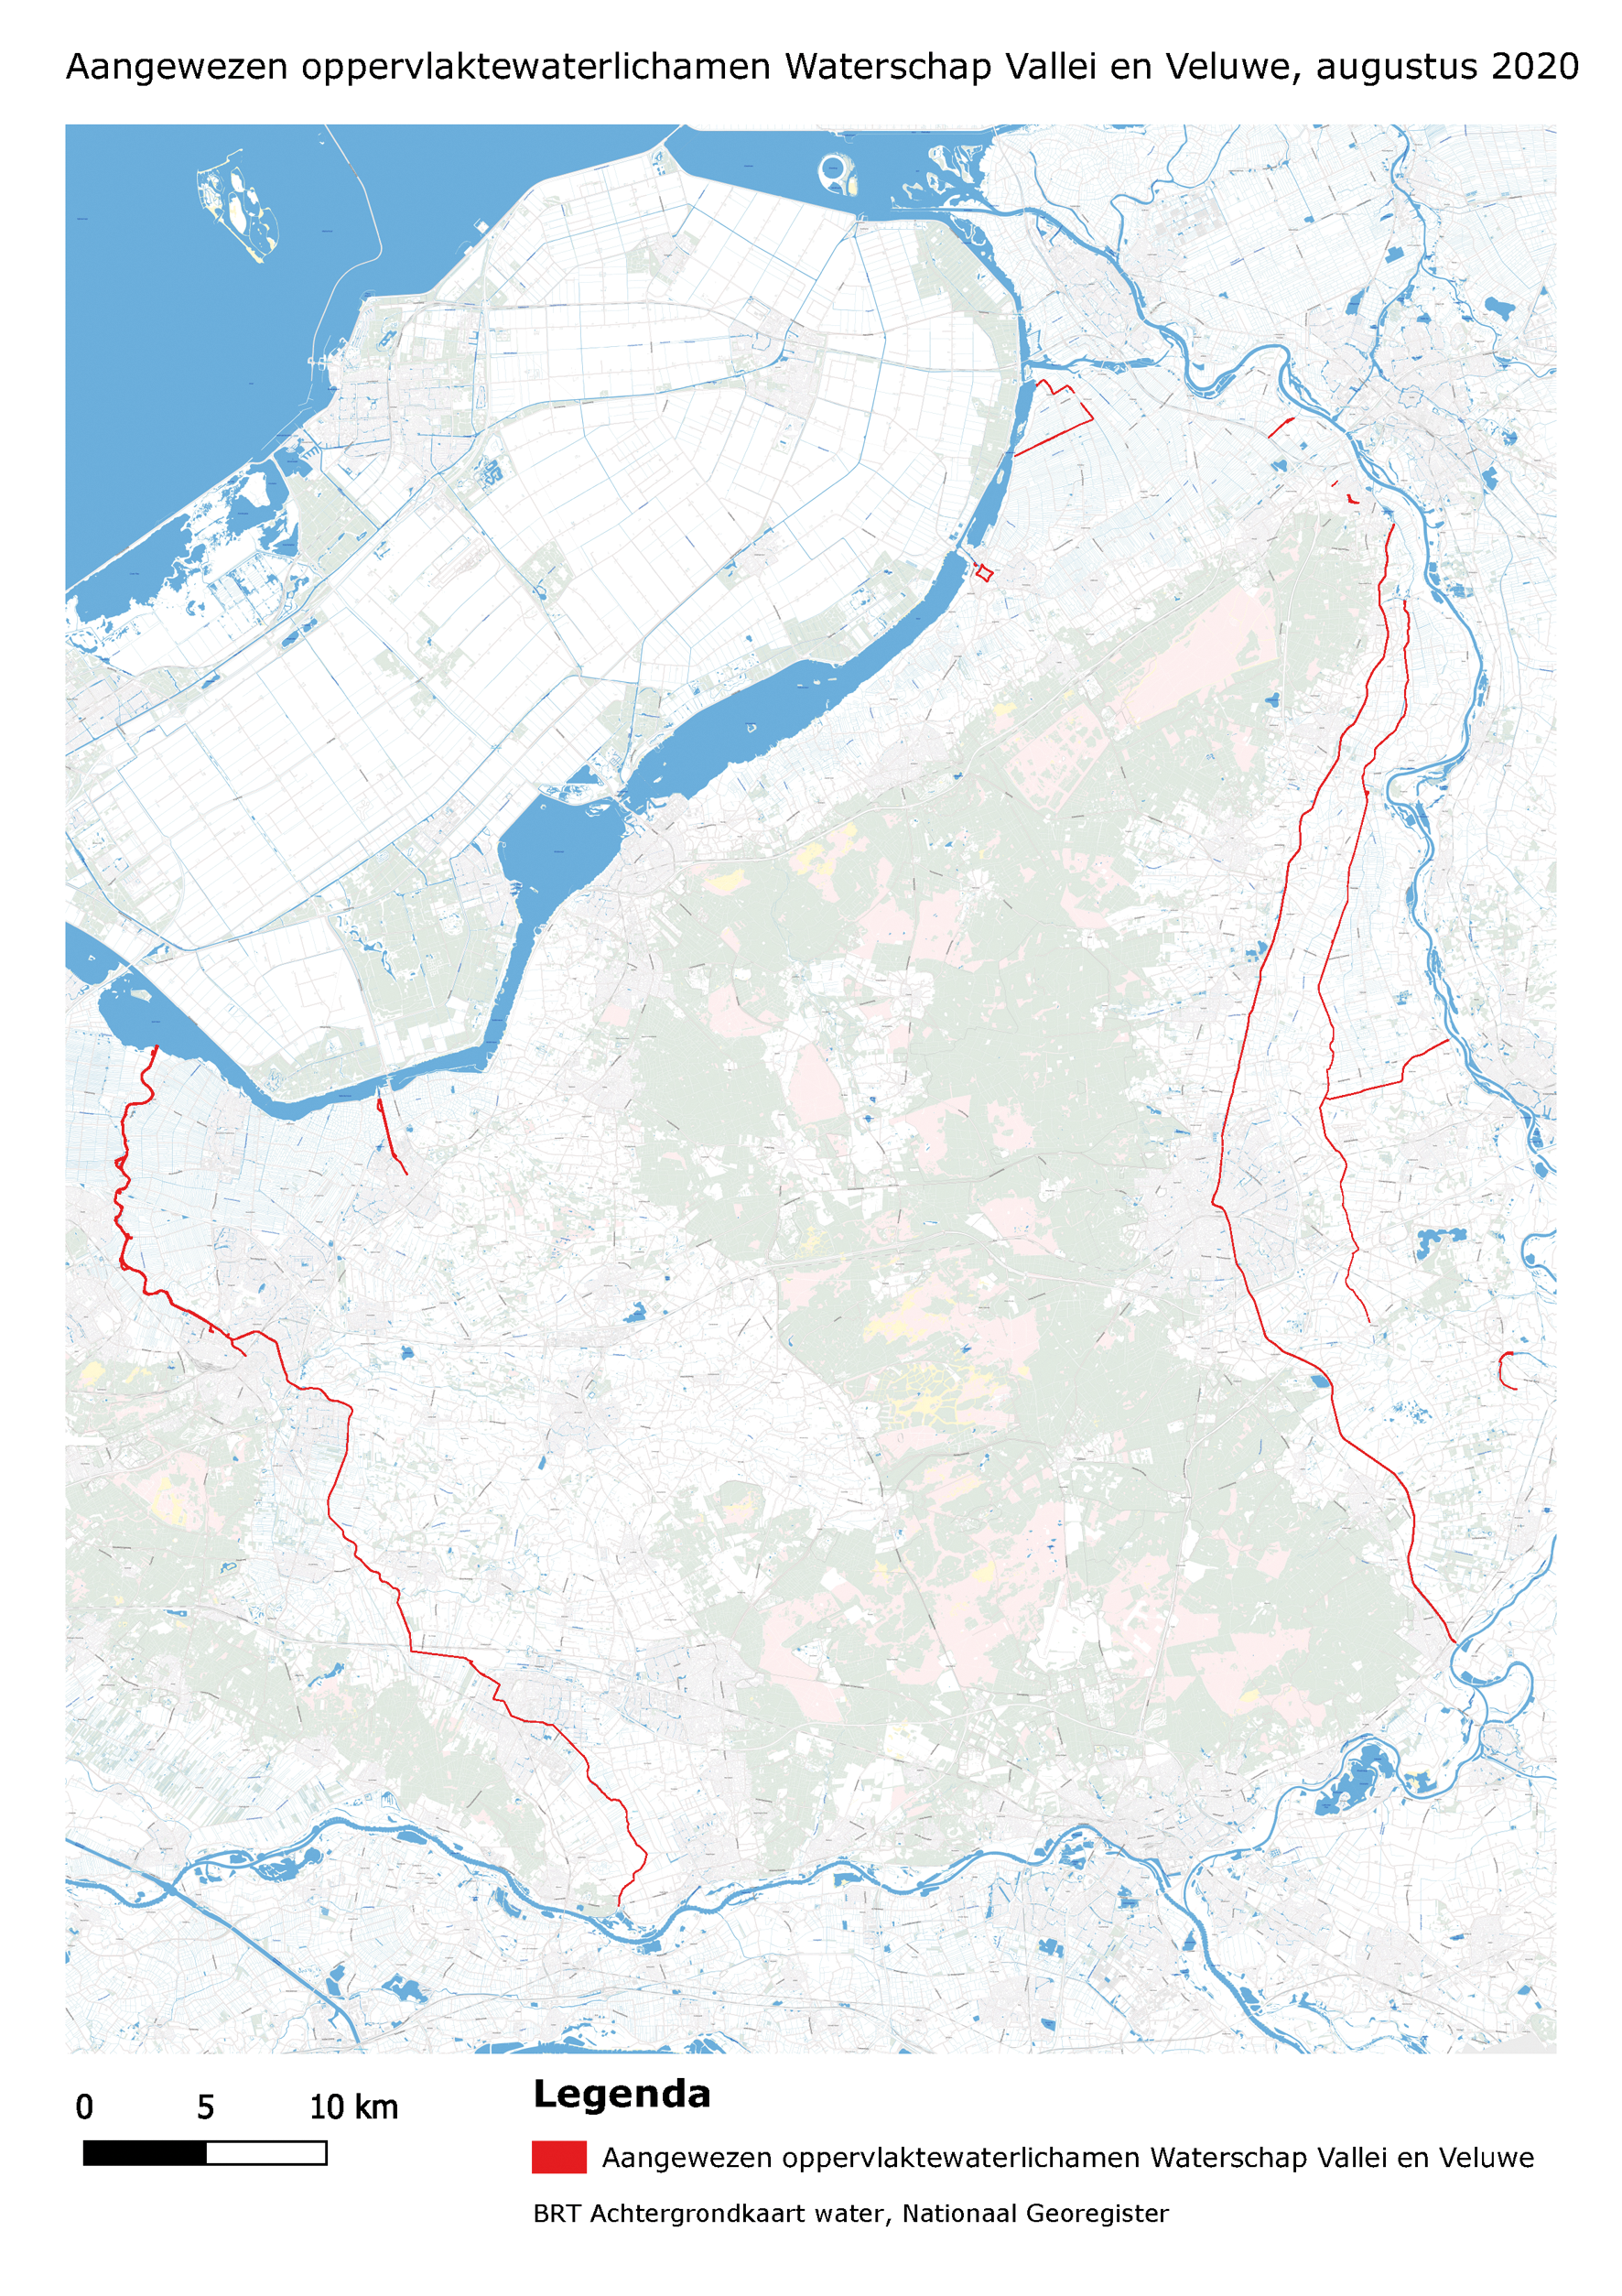 Aangewezen oppervlaktewaterlichamen Waterschap Vallei en Veluwe